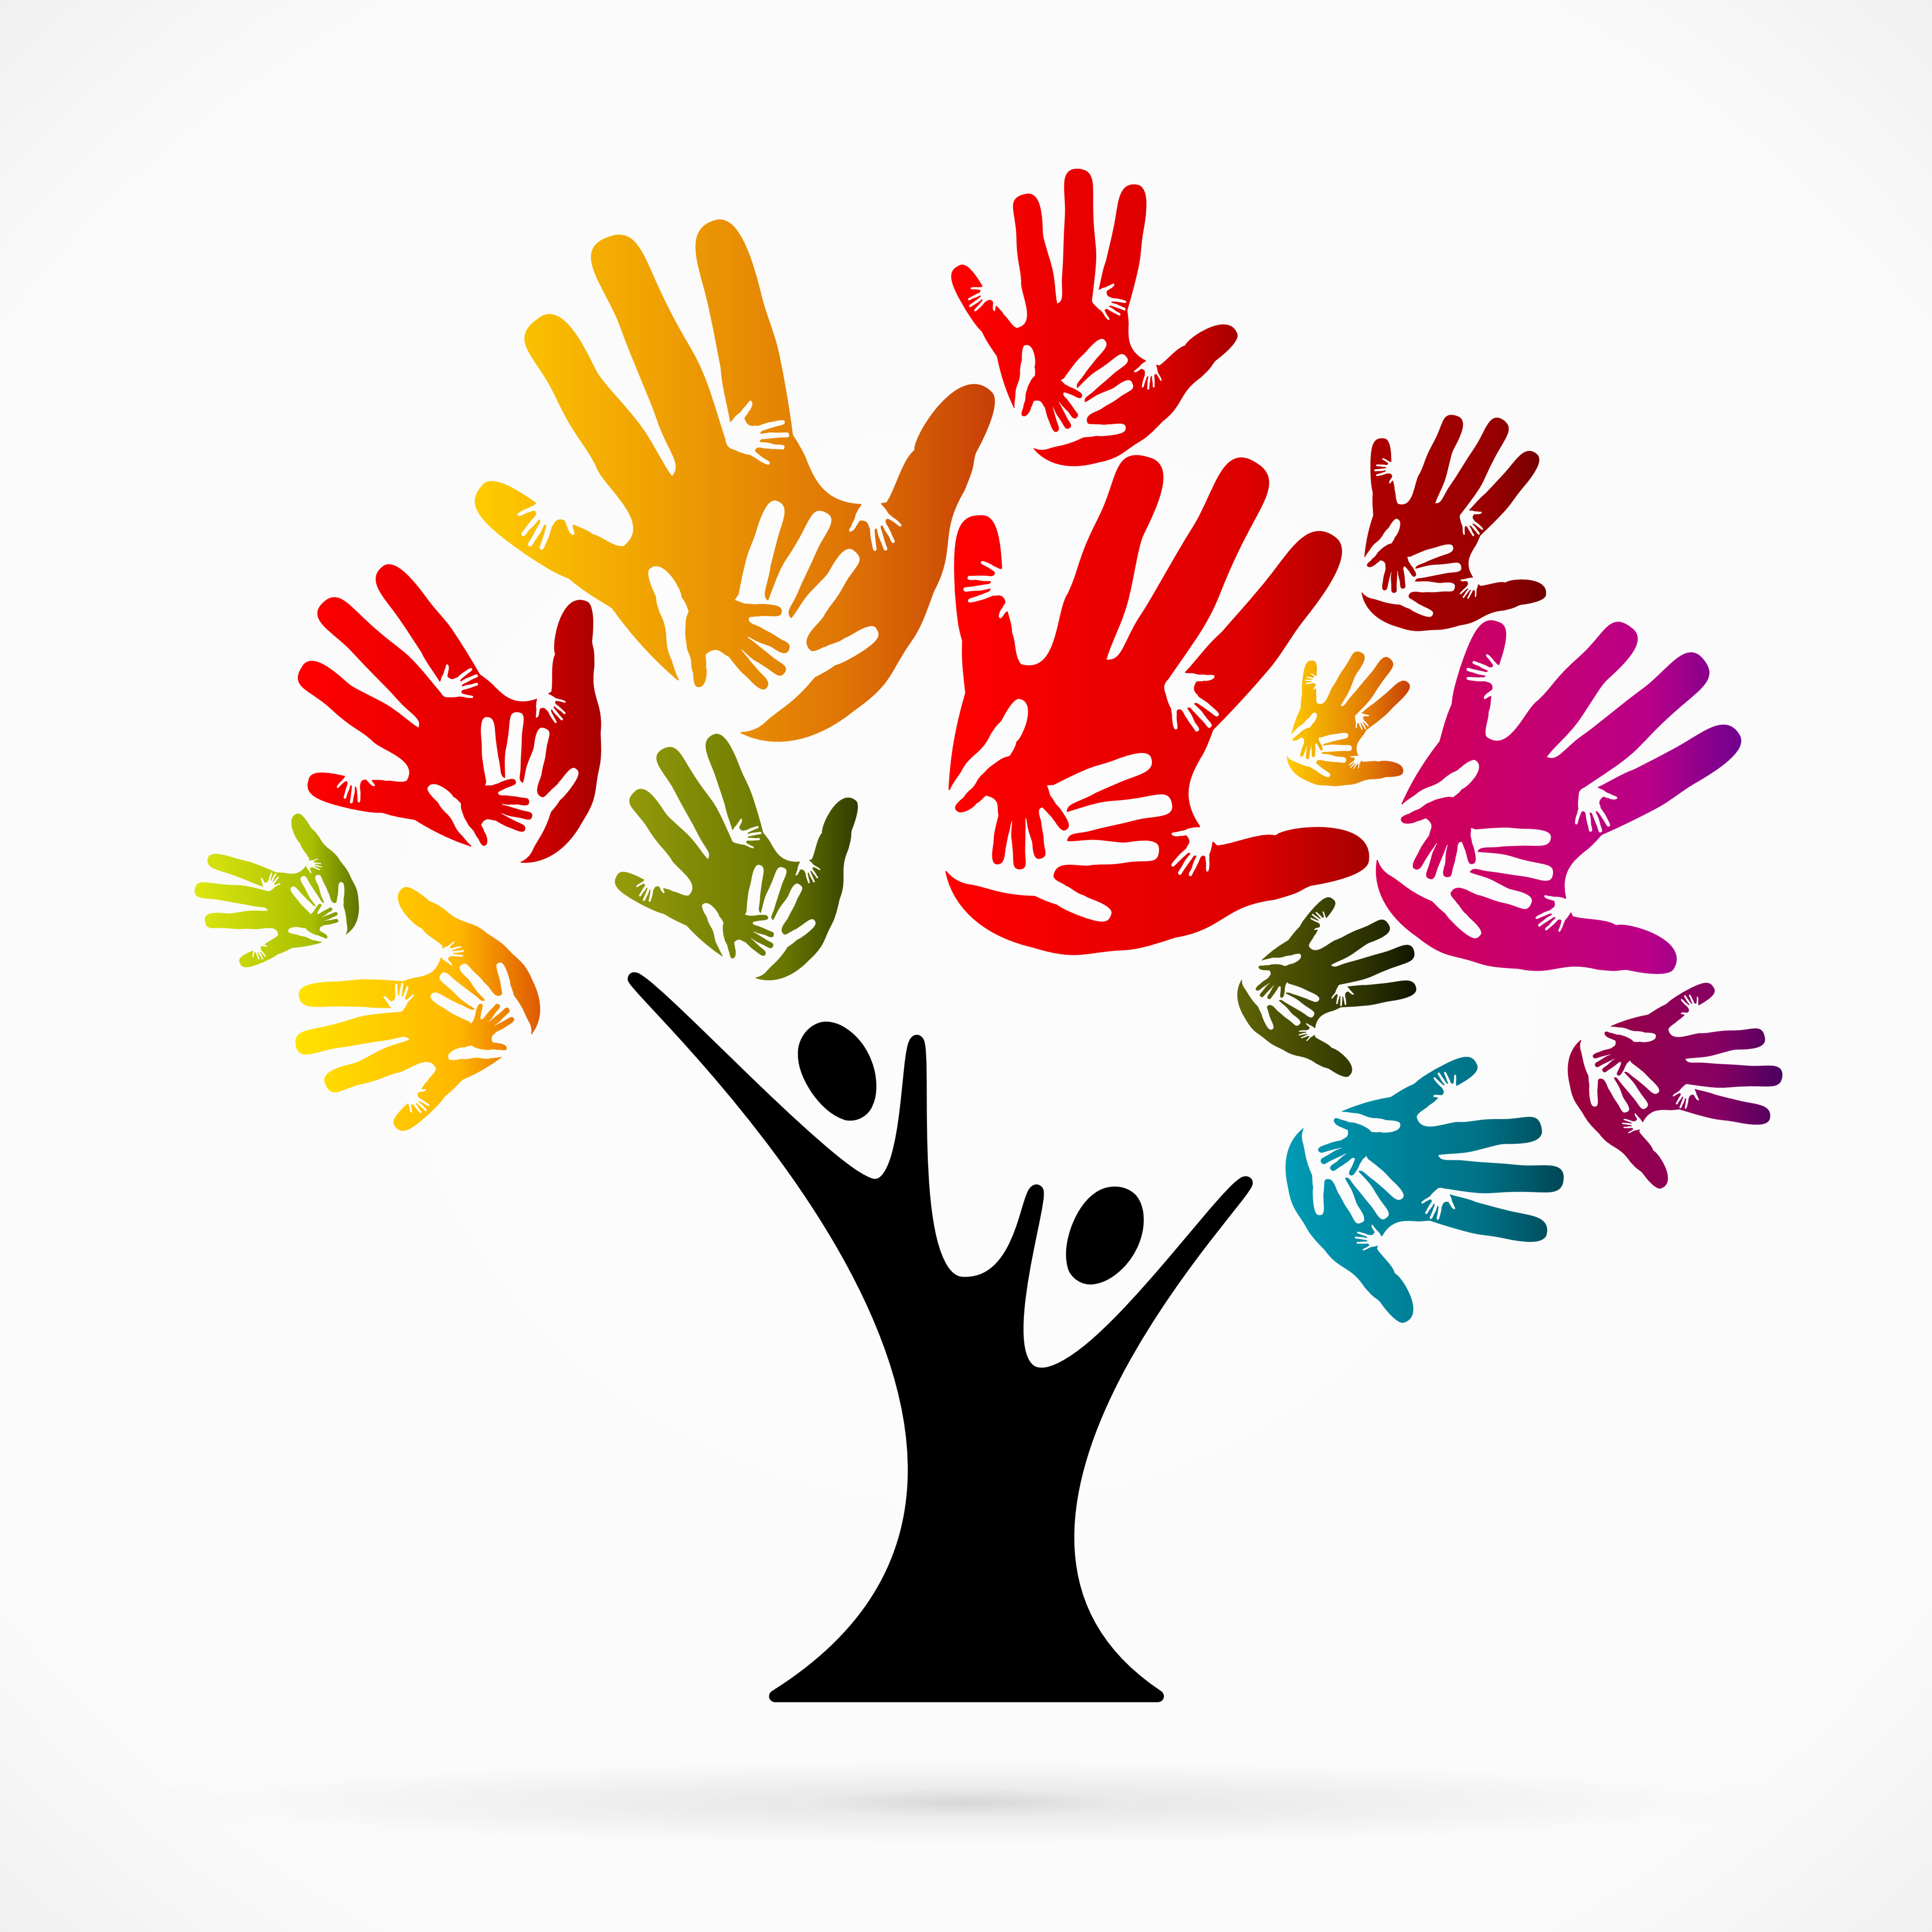 Волонтеры графика. Дерево с ладошками. Символ толерантности. Цветные руки. Символ волонтеров.